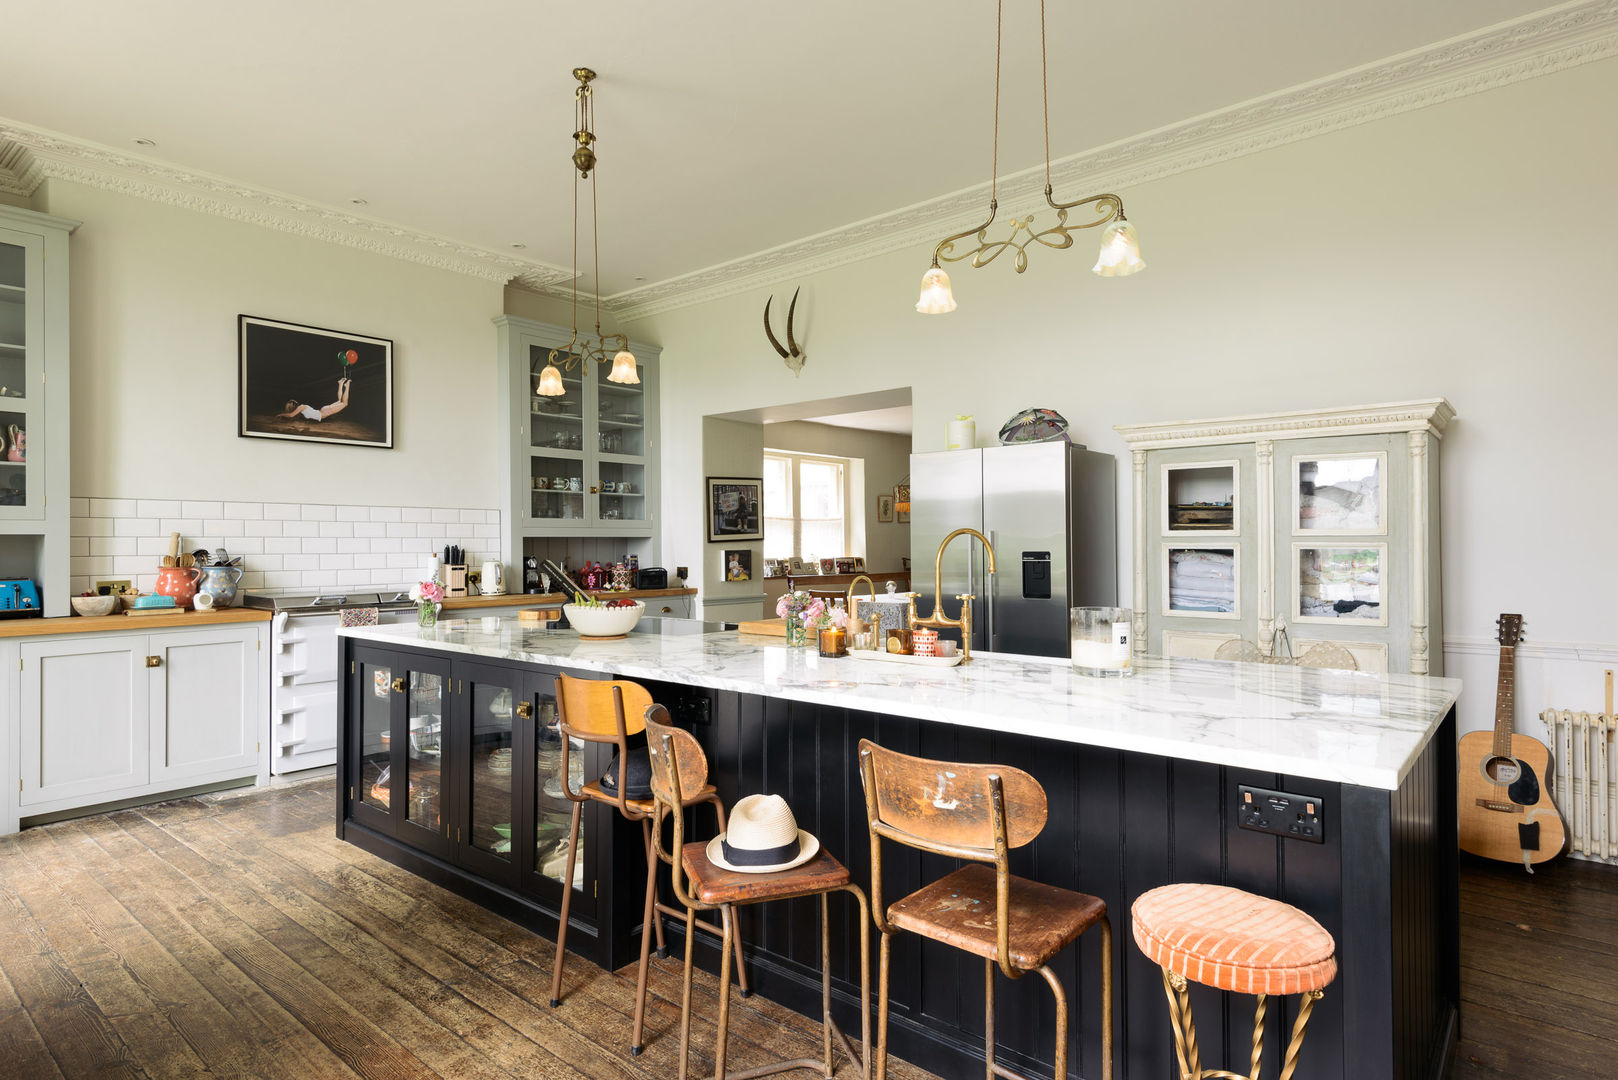 The Frome Kitchen by deVOL deVOL Kitchens Кухни в эклектичном стиле kitchen island,classic,eclectic,dark kitchens,marble,worktop